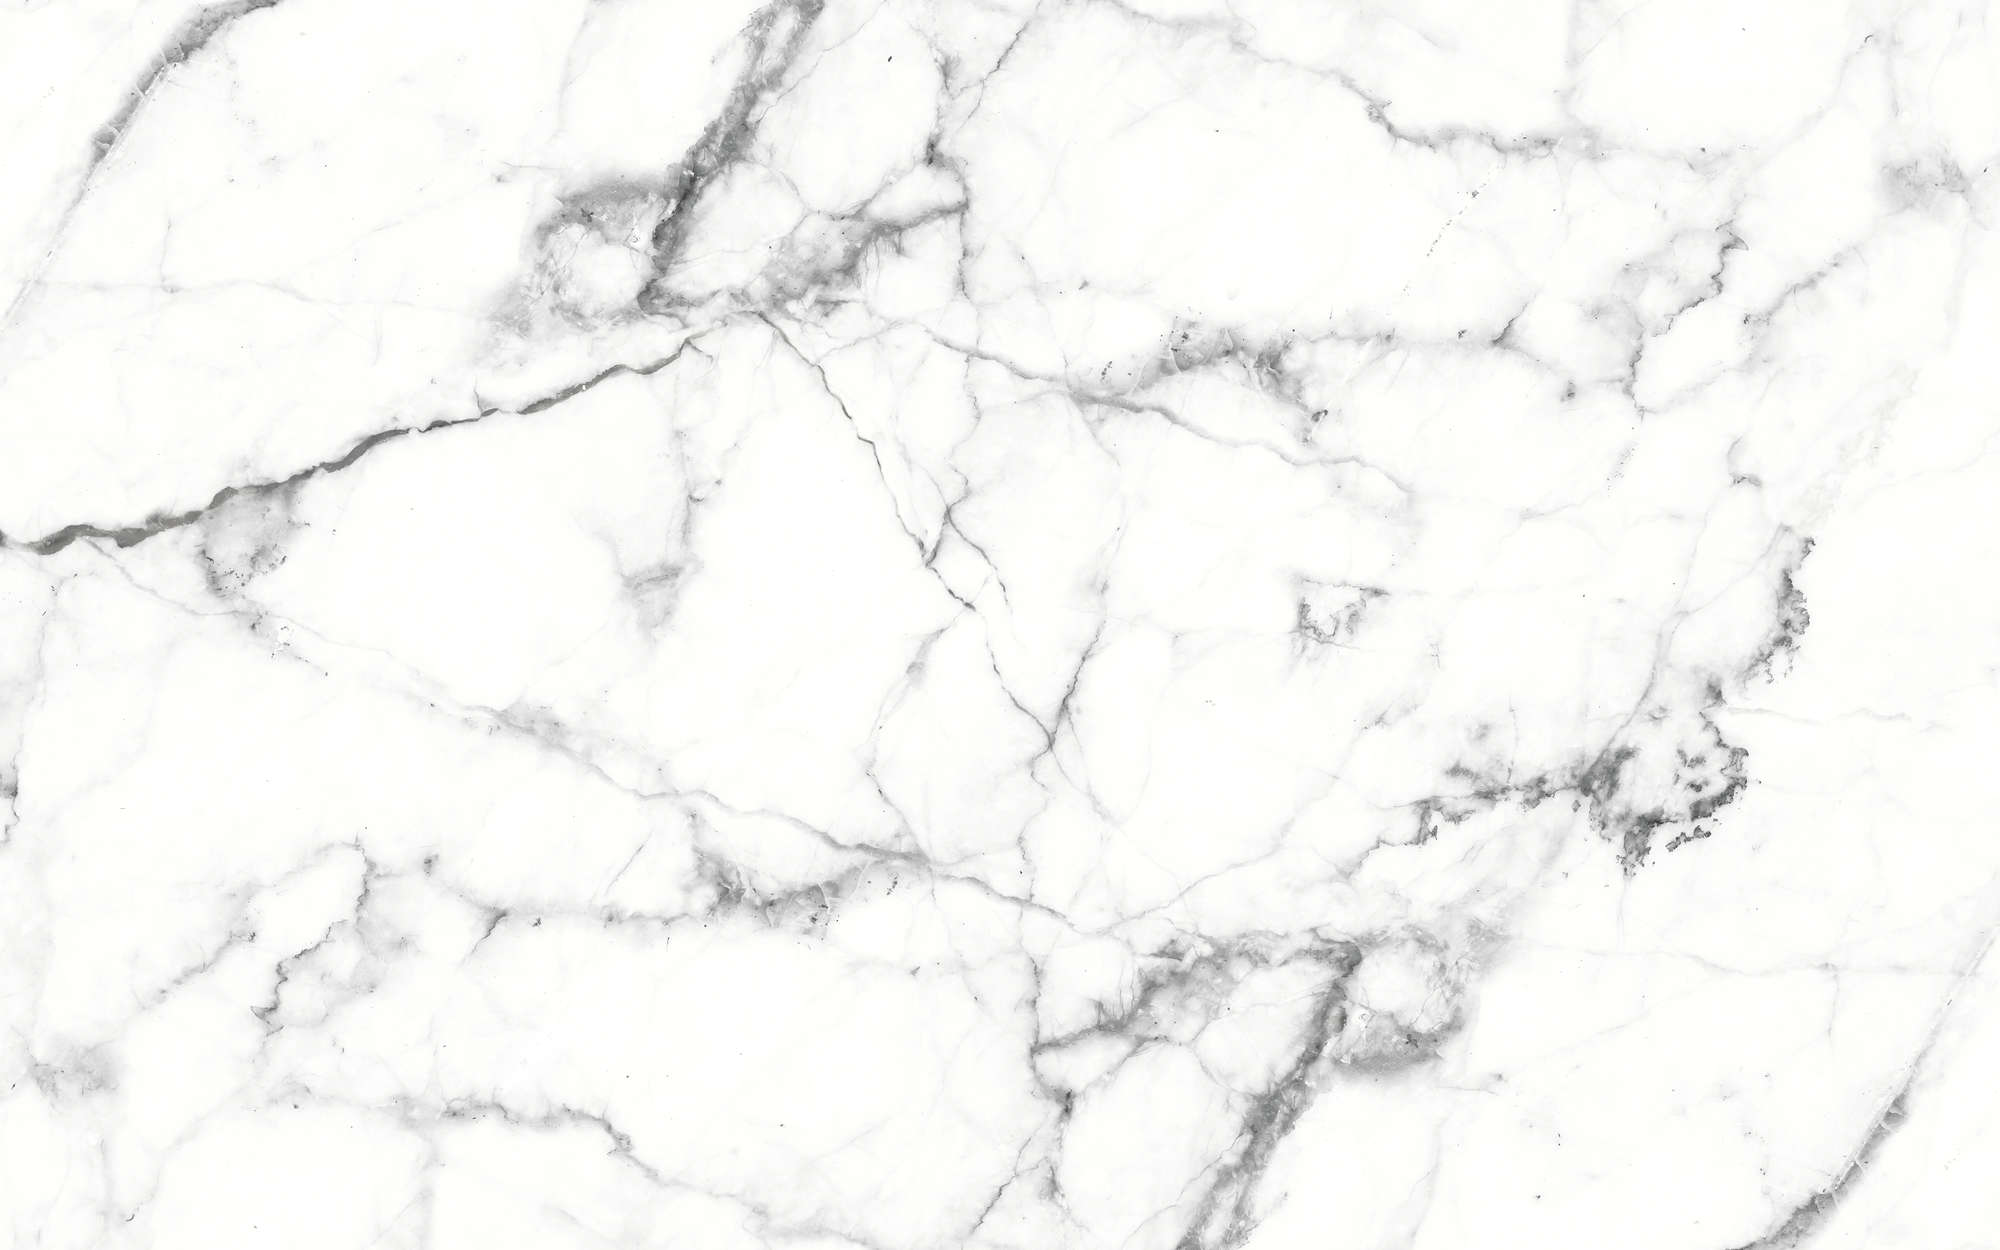             Carta da parati in marmo effetto pietra chiara marmorizzata - bianco, nero
        